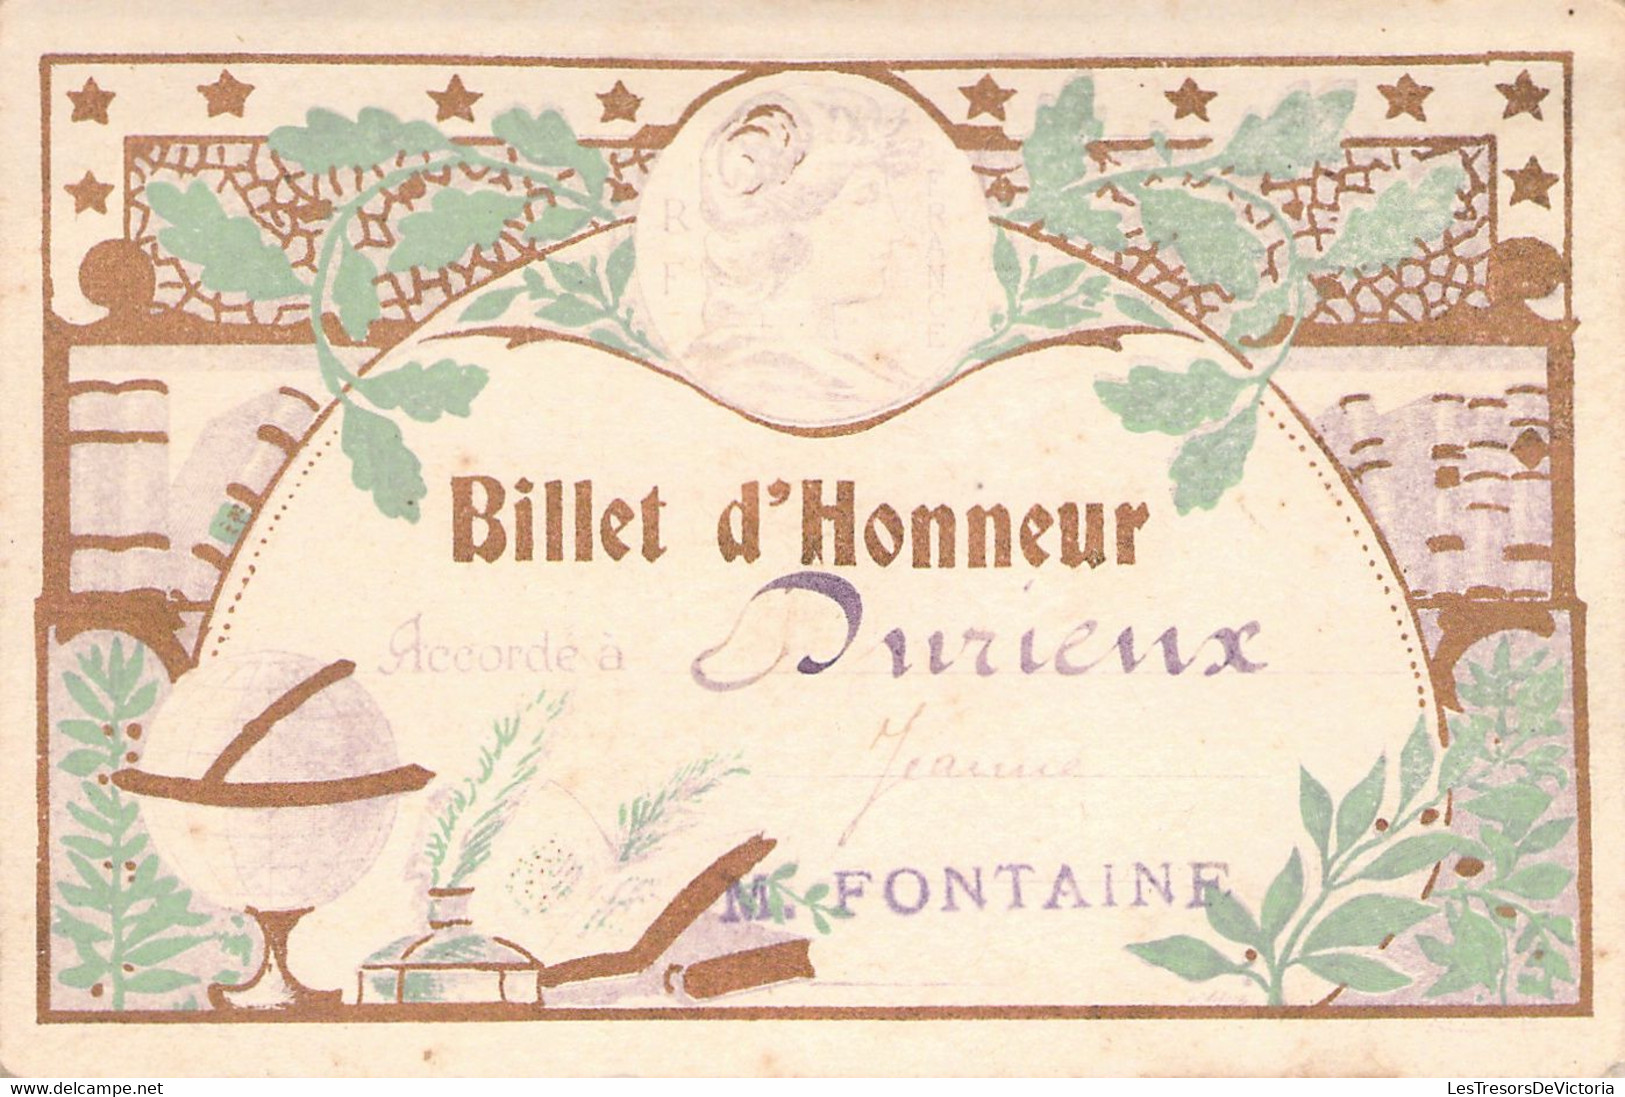 Lot De 4 Billets D'Honneur Accordé à Durieux Jeanne En 1924 - M Fontaine - France - BAISSE DE PRIX -50% - Diplomi E Pagelle